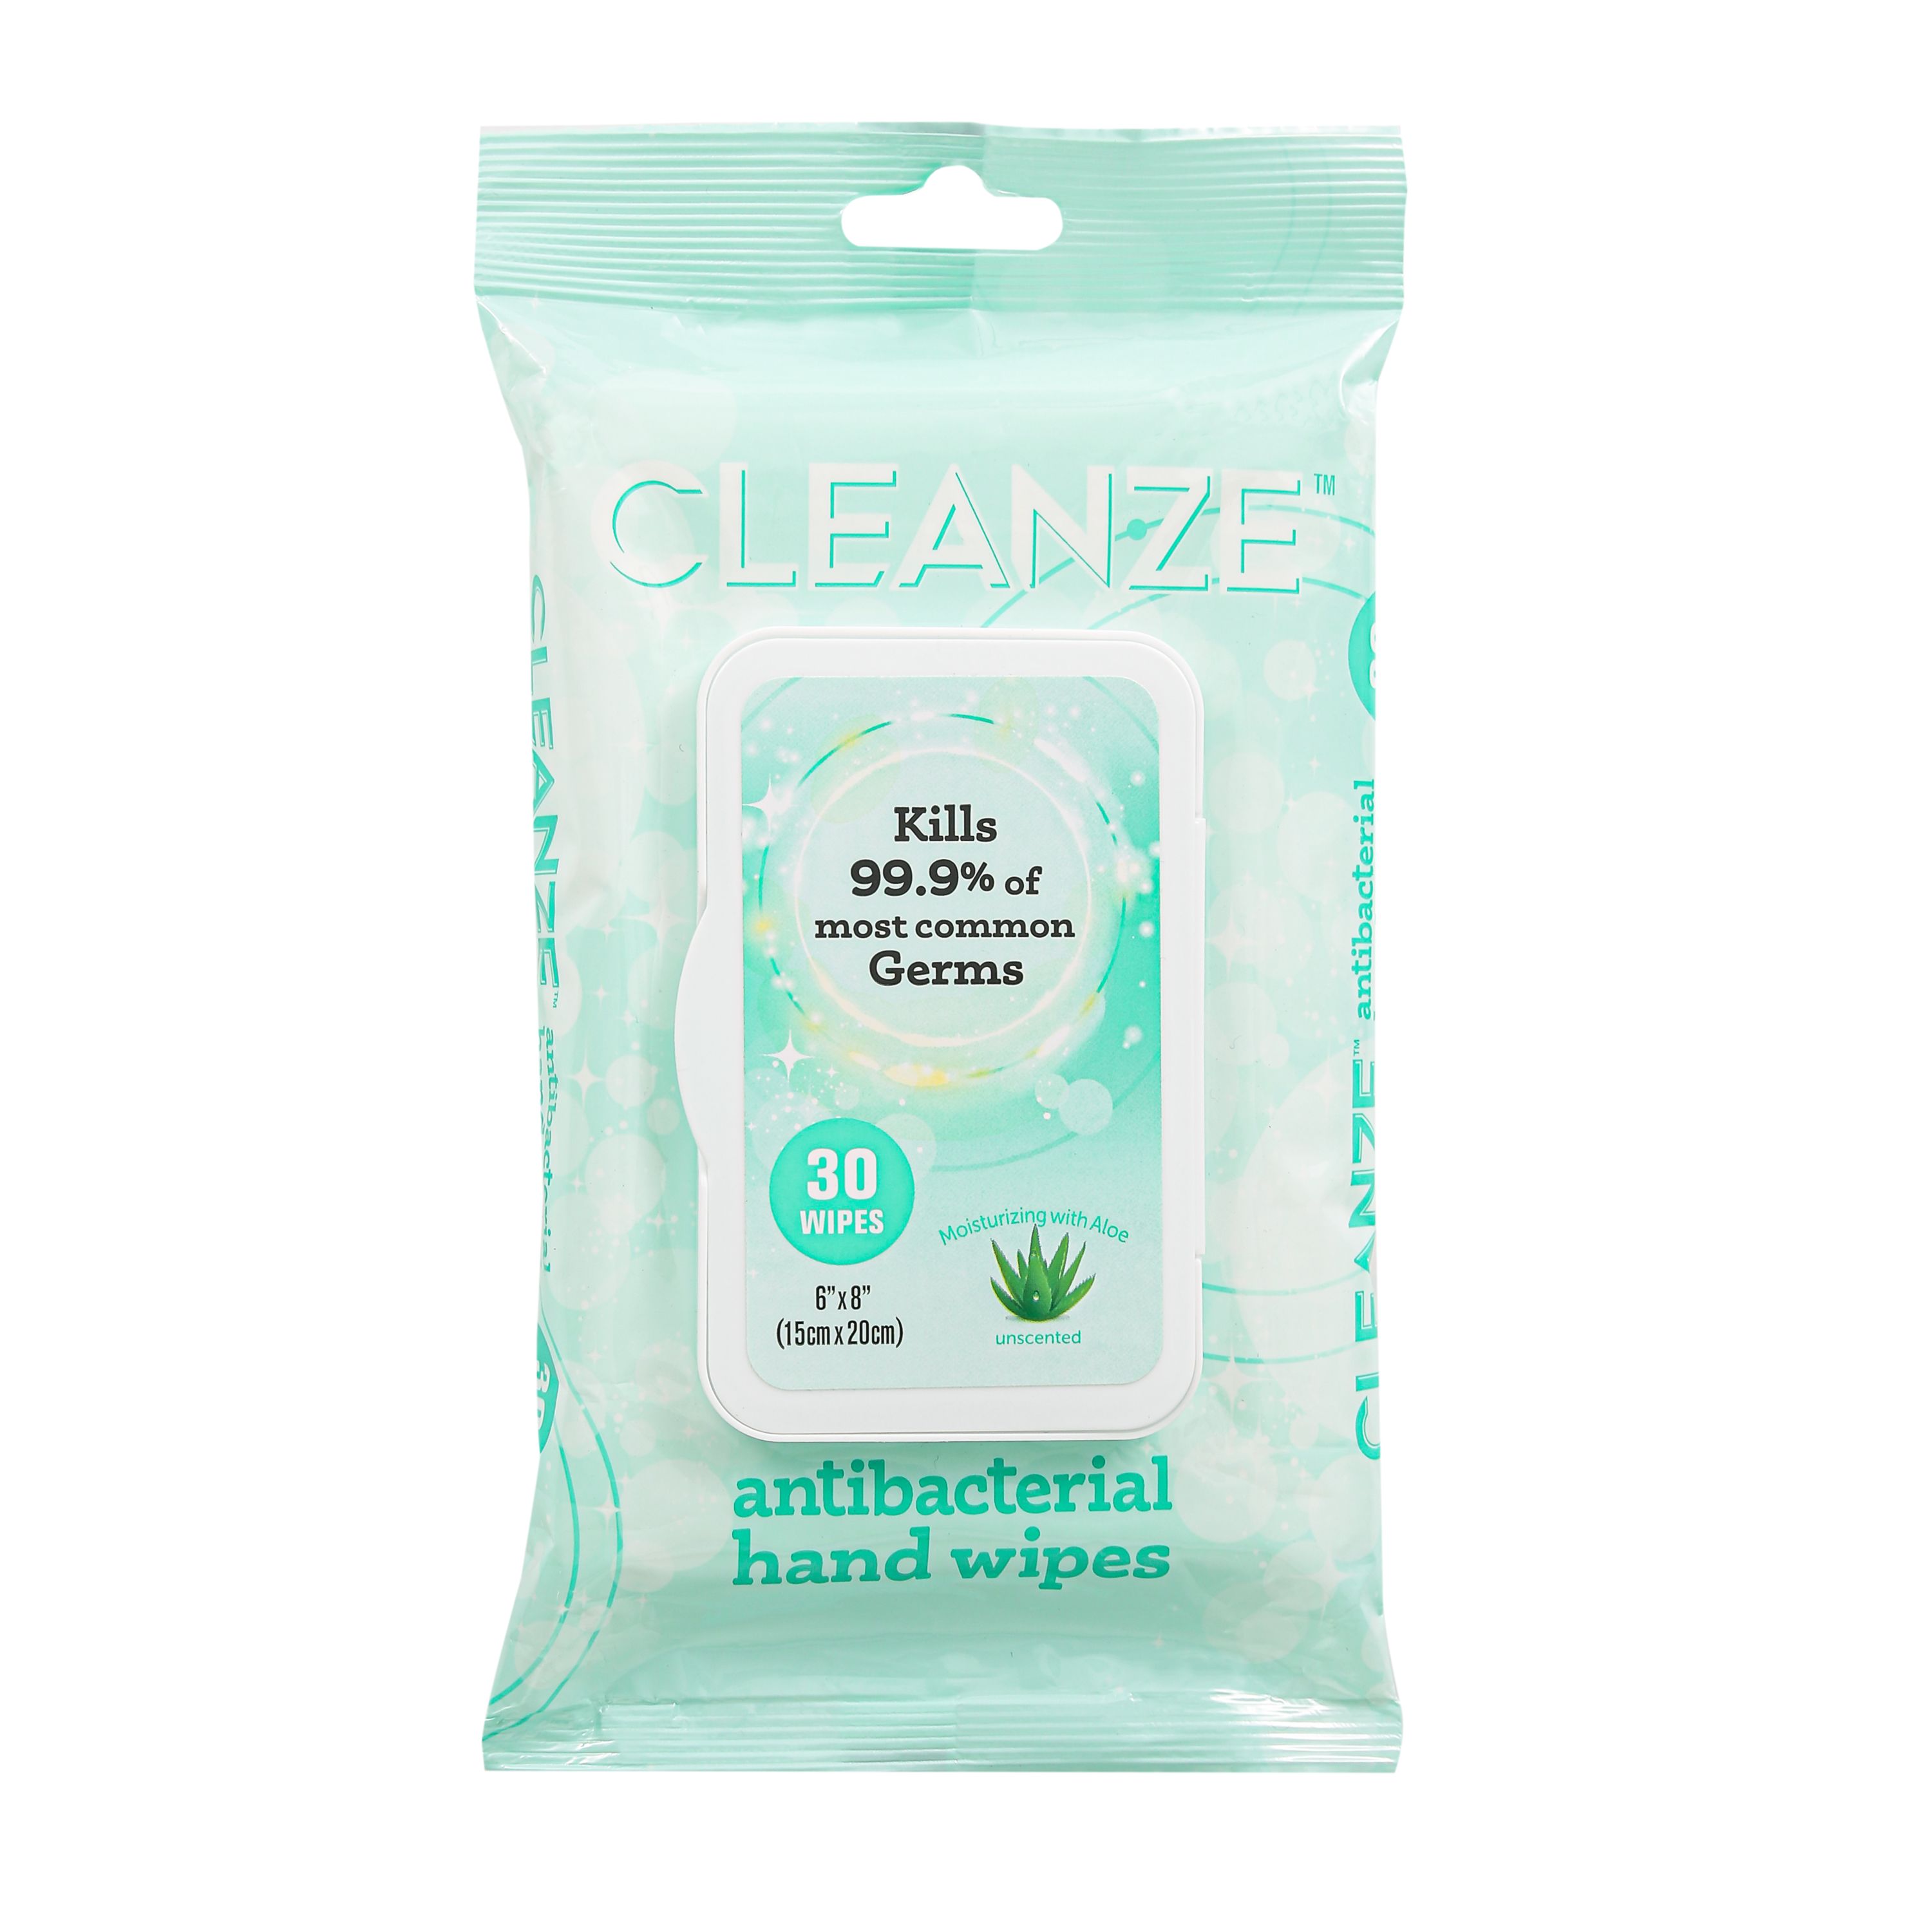 Cleanze FFP15256